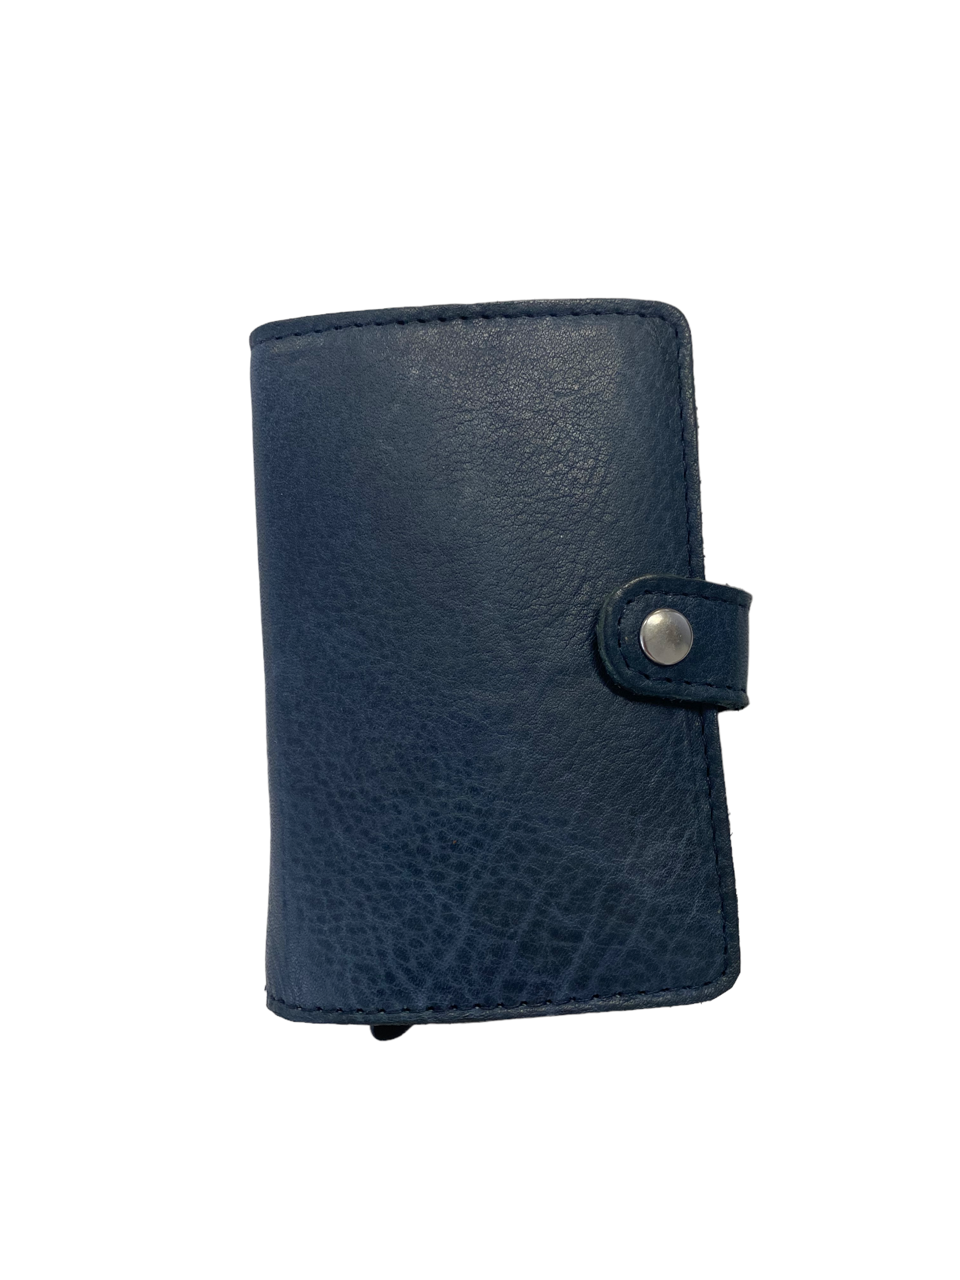 Oran - DL-02 Leather Spring load 8 card wallet - Blue